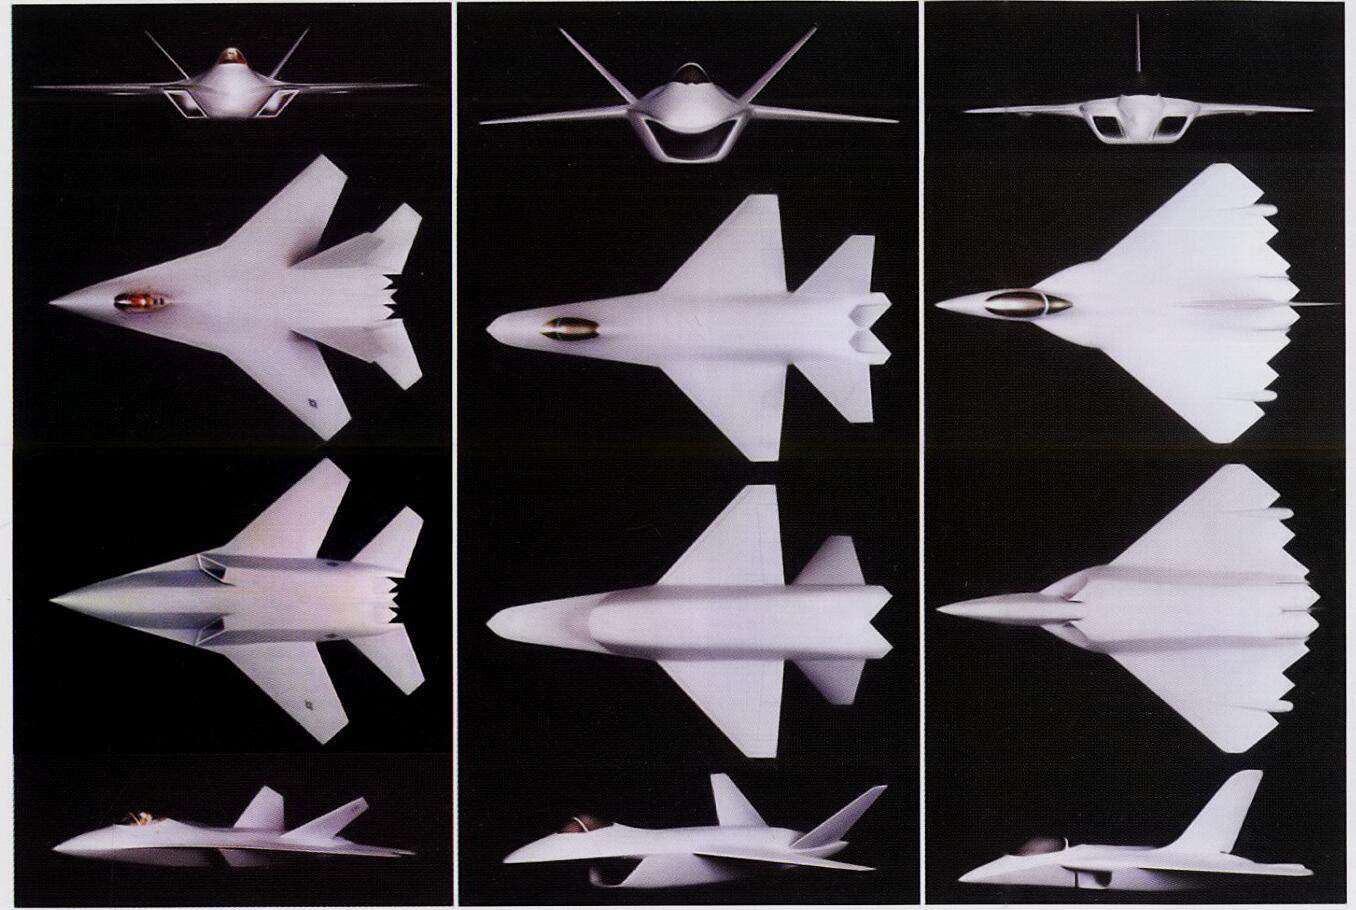 整个095构型可以说是在洛克希德的方案基础上，融合了波音（弹舱设计）与通用动力（前机身）各自Dem/Val概念设计的结果。